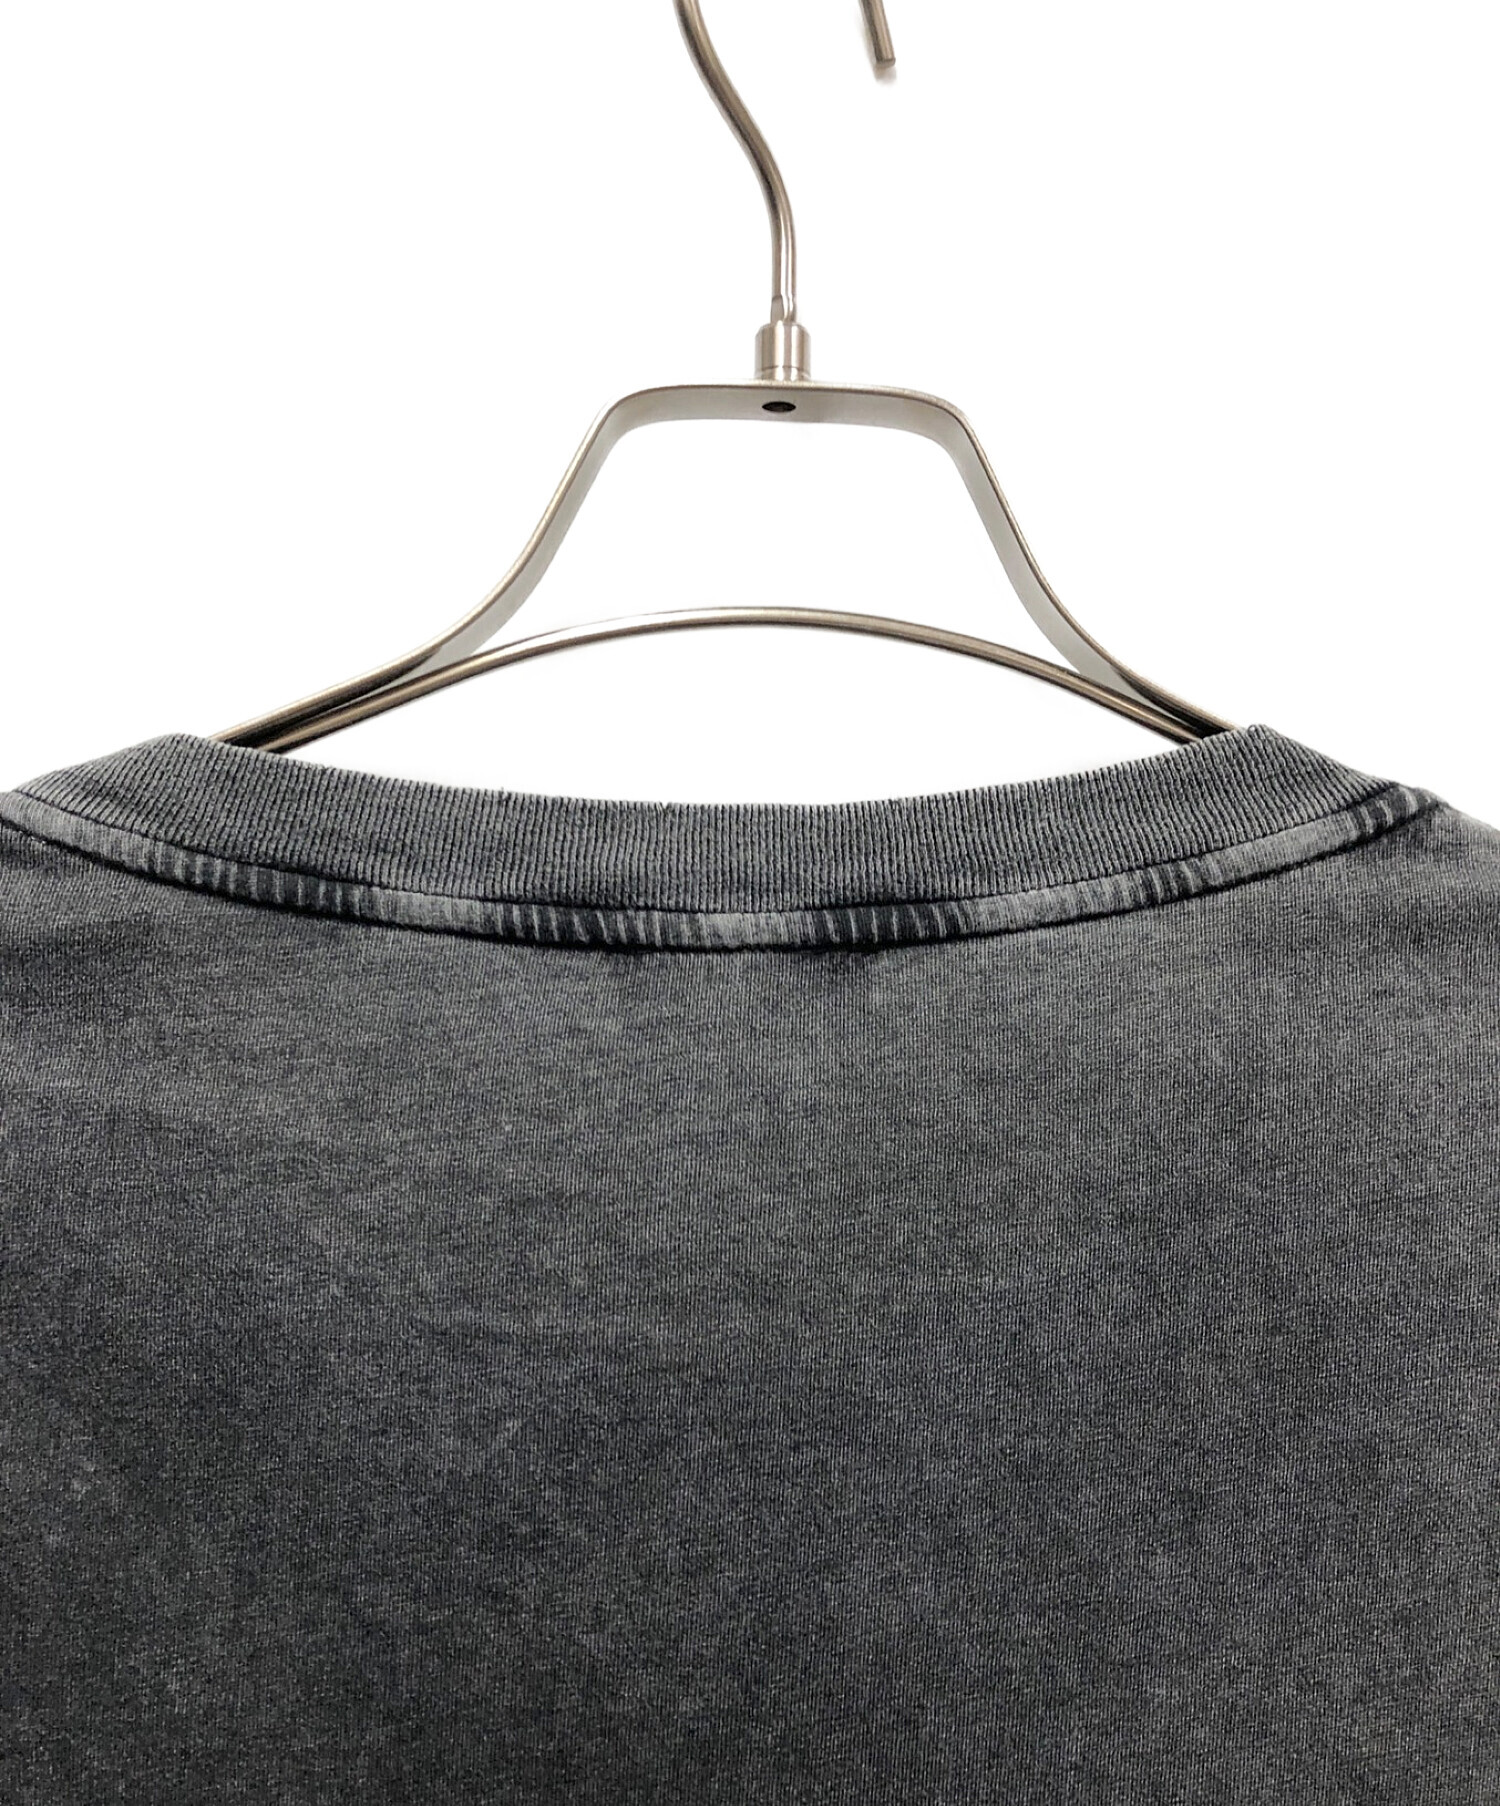 【希少XLサイズ】サンローランパリ ダメージ加工 クラシックロゴ Tシャツ 正規